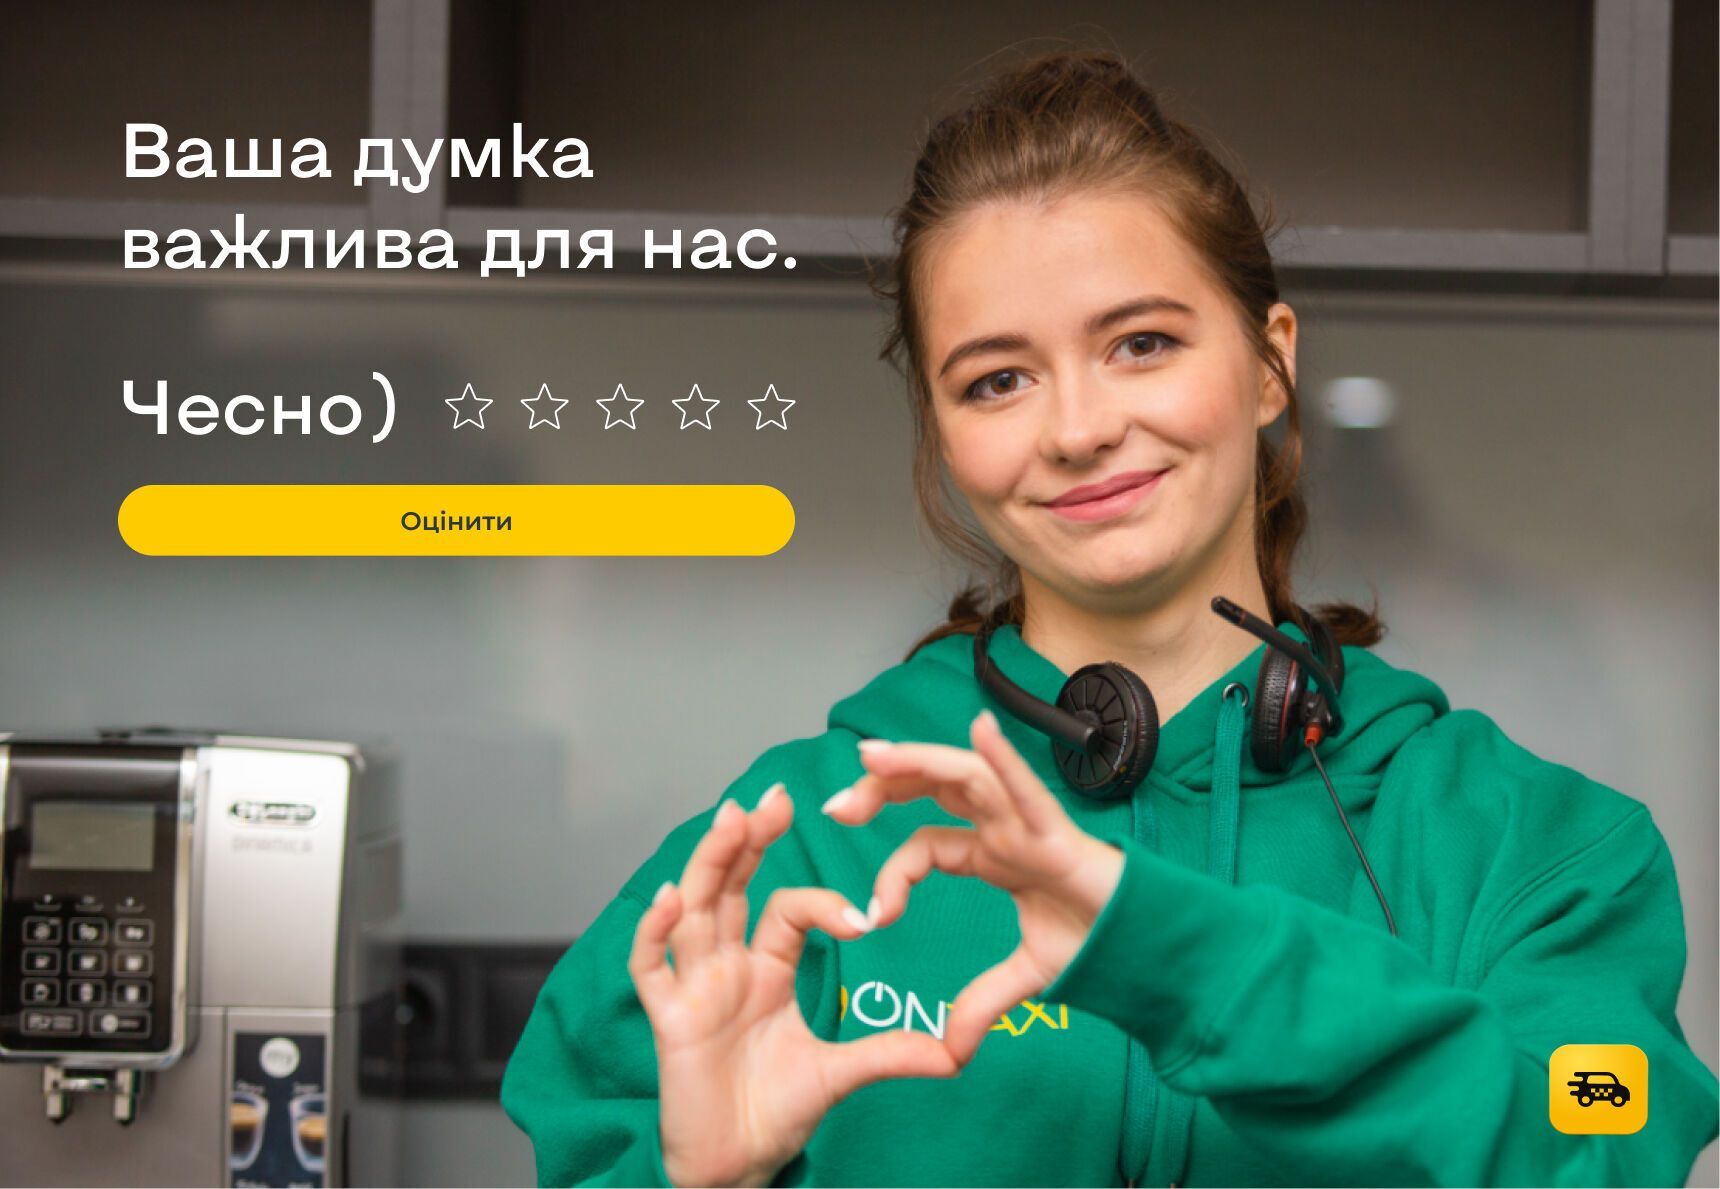 Безпека має значення: всеукраїнський сервіс виклику авто OnTaxi поділився правилами та вимогами до водіїв